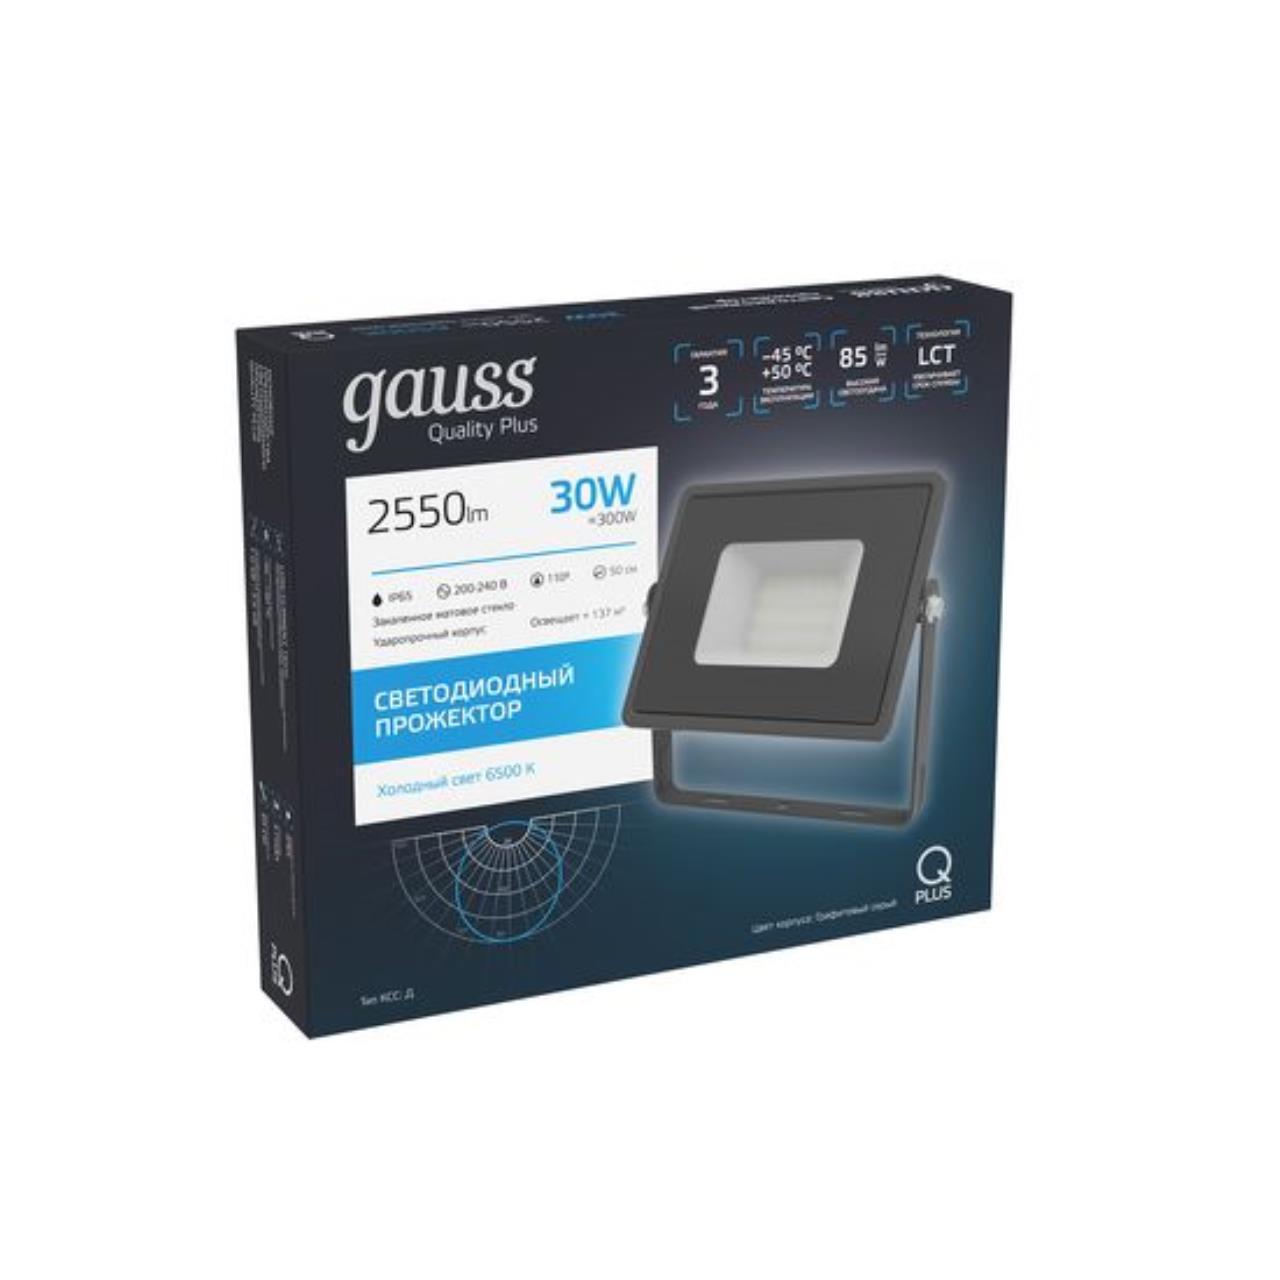 Прожектор светодиодный Gauss Qplus 30 W 2550 lm IP65 6500K графитовый серый 1/10